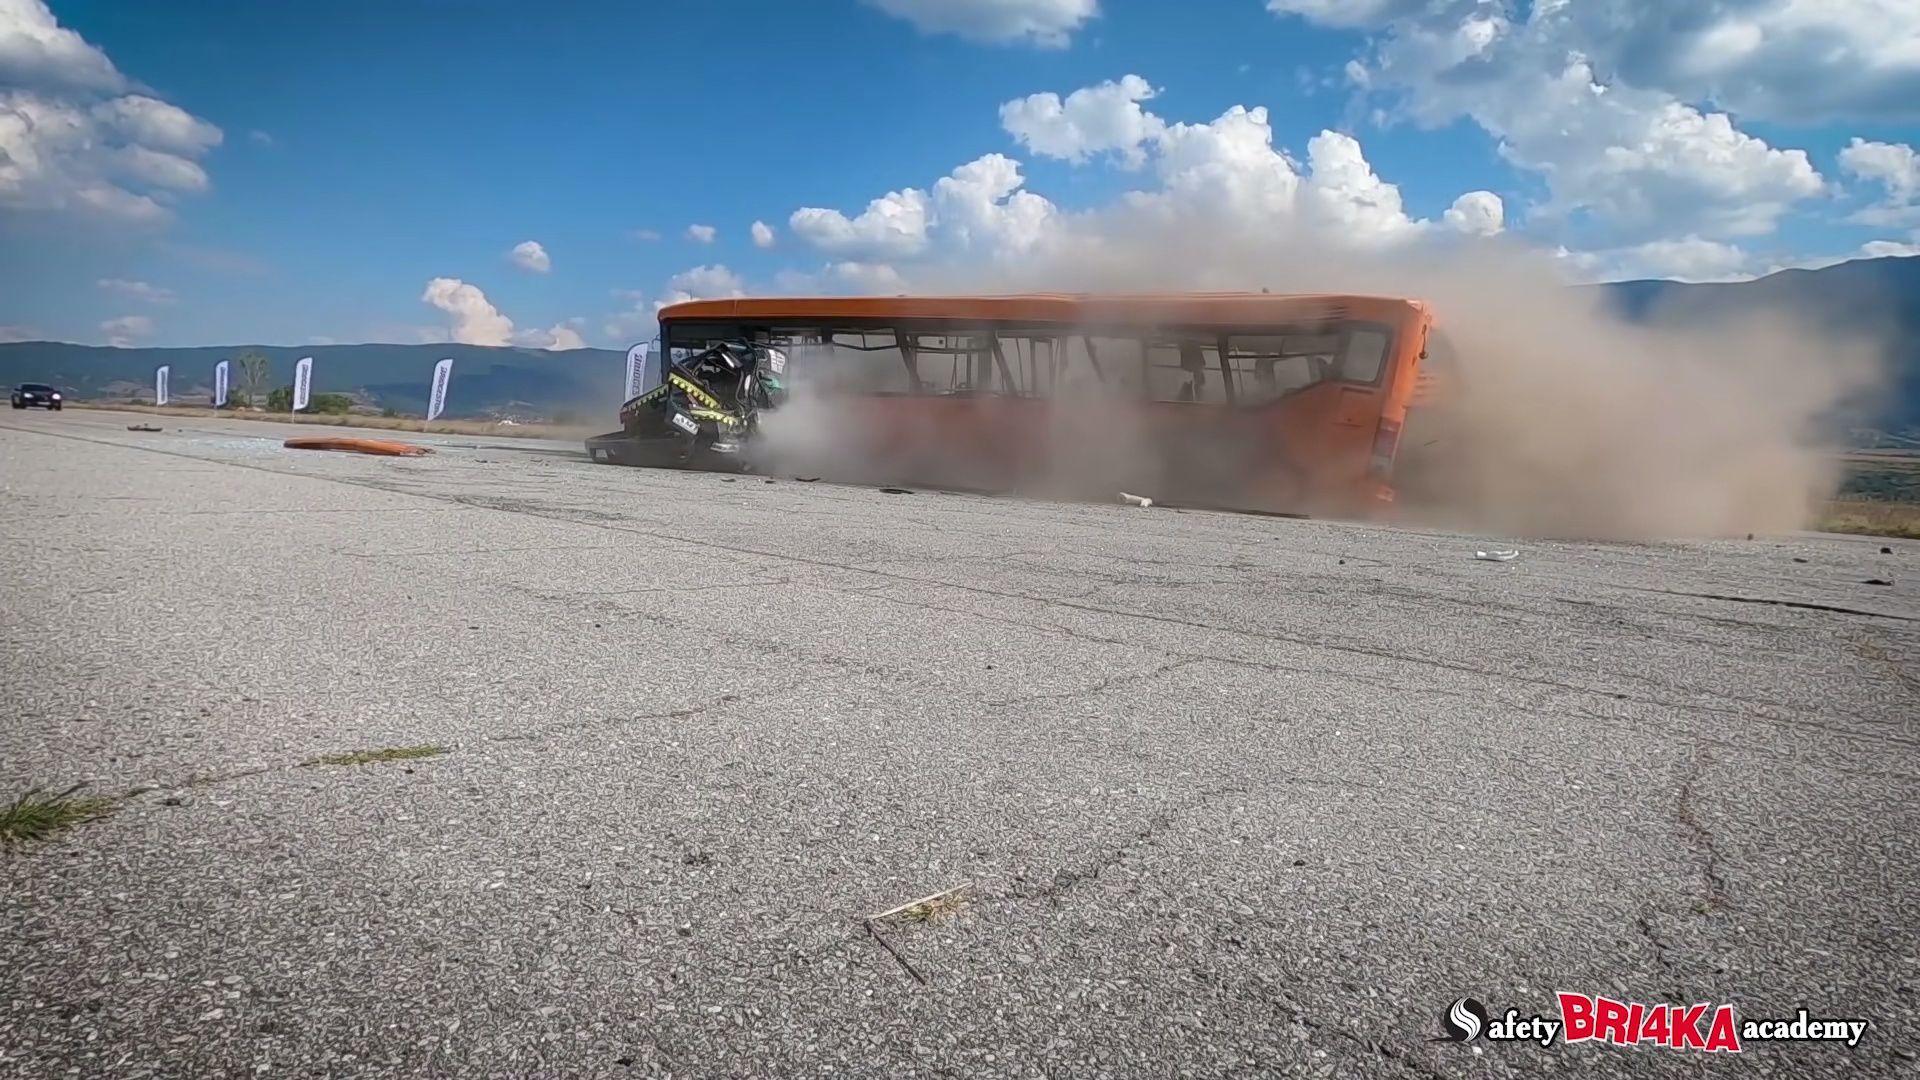 Cel mai rapid crash test din lume: 208+ km/h! (VIDEO)